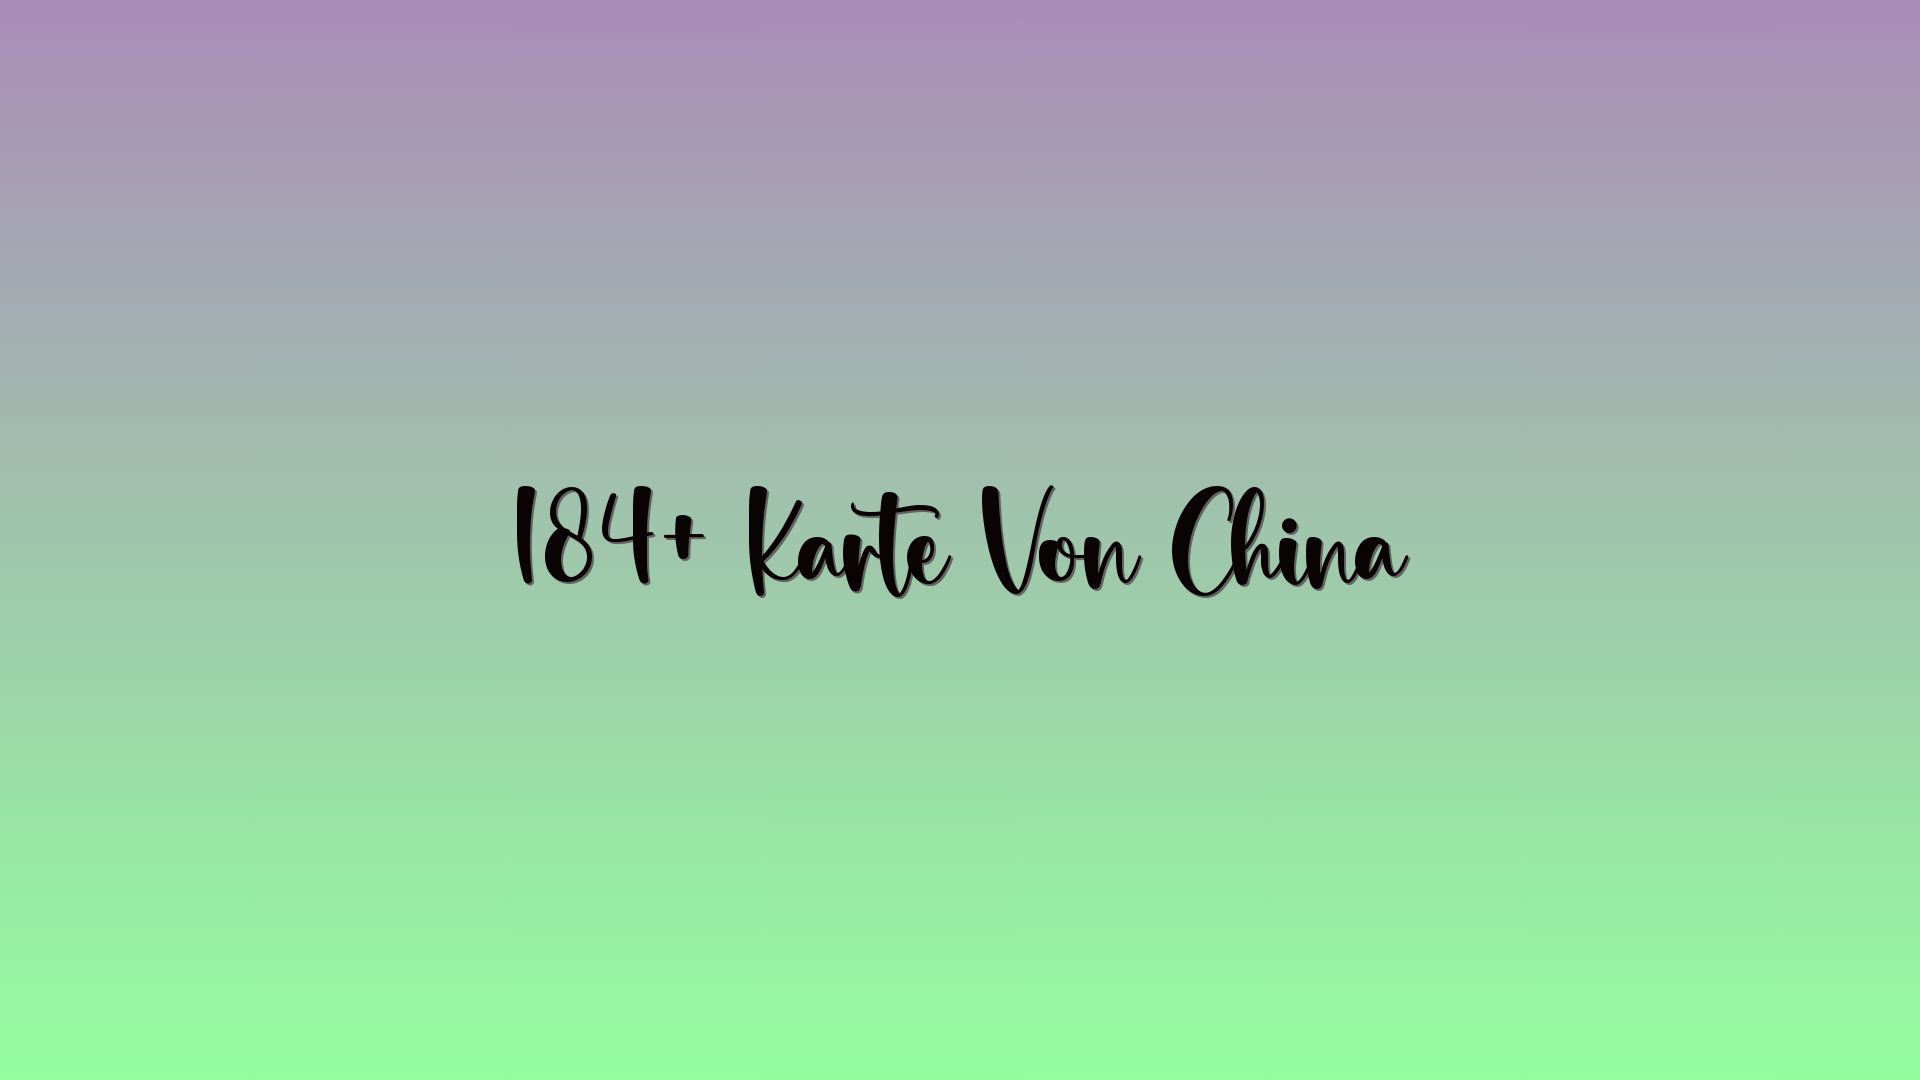 184+ Karte Von China